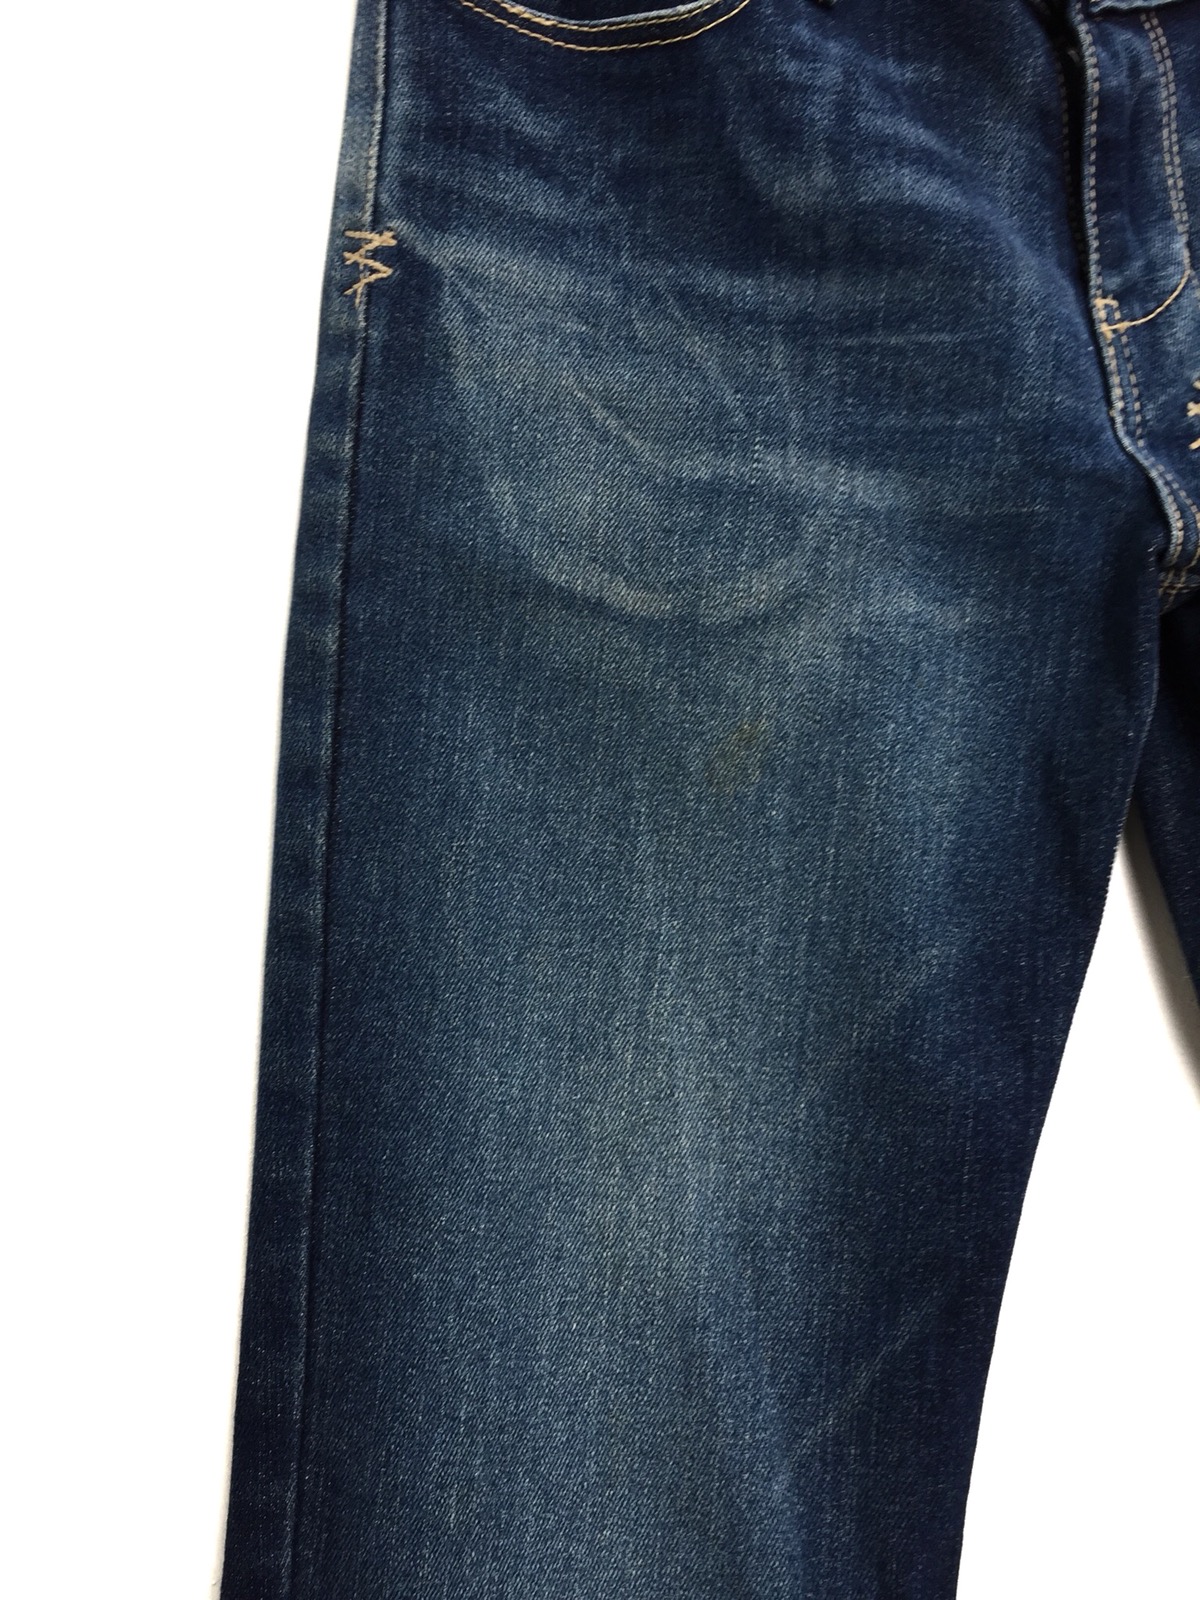 KSUBI Distressed Rip Van Winkle Jeans - 7